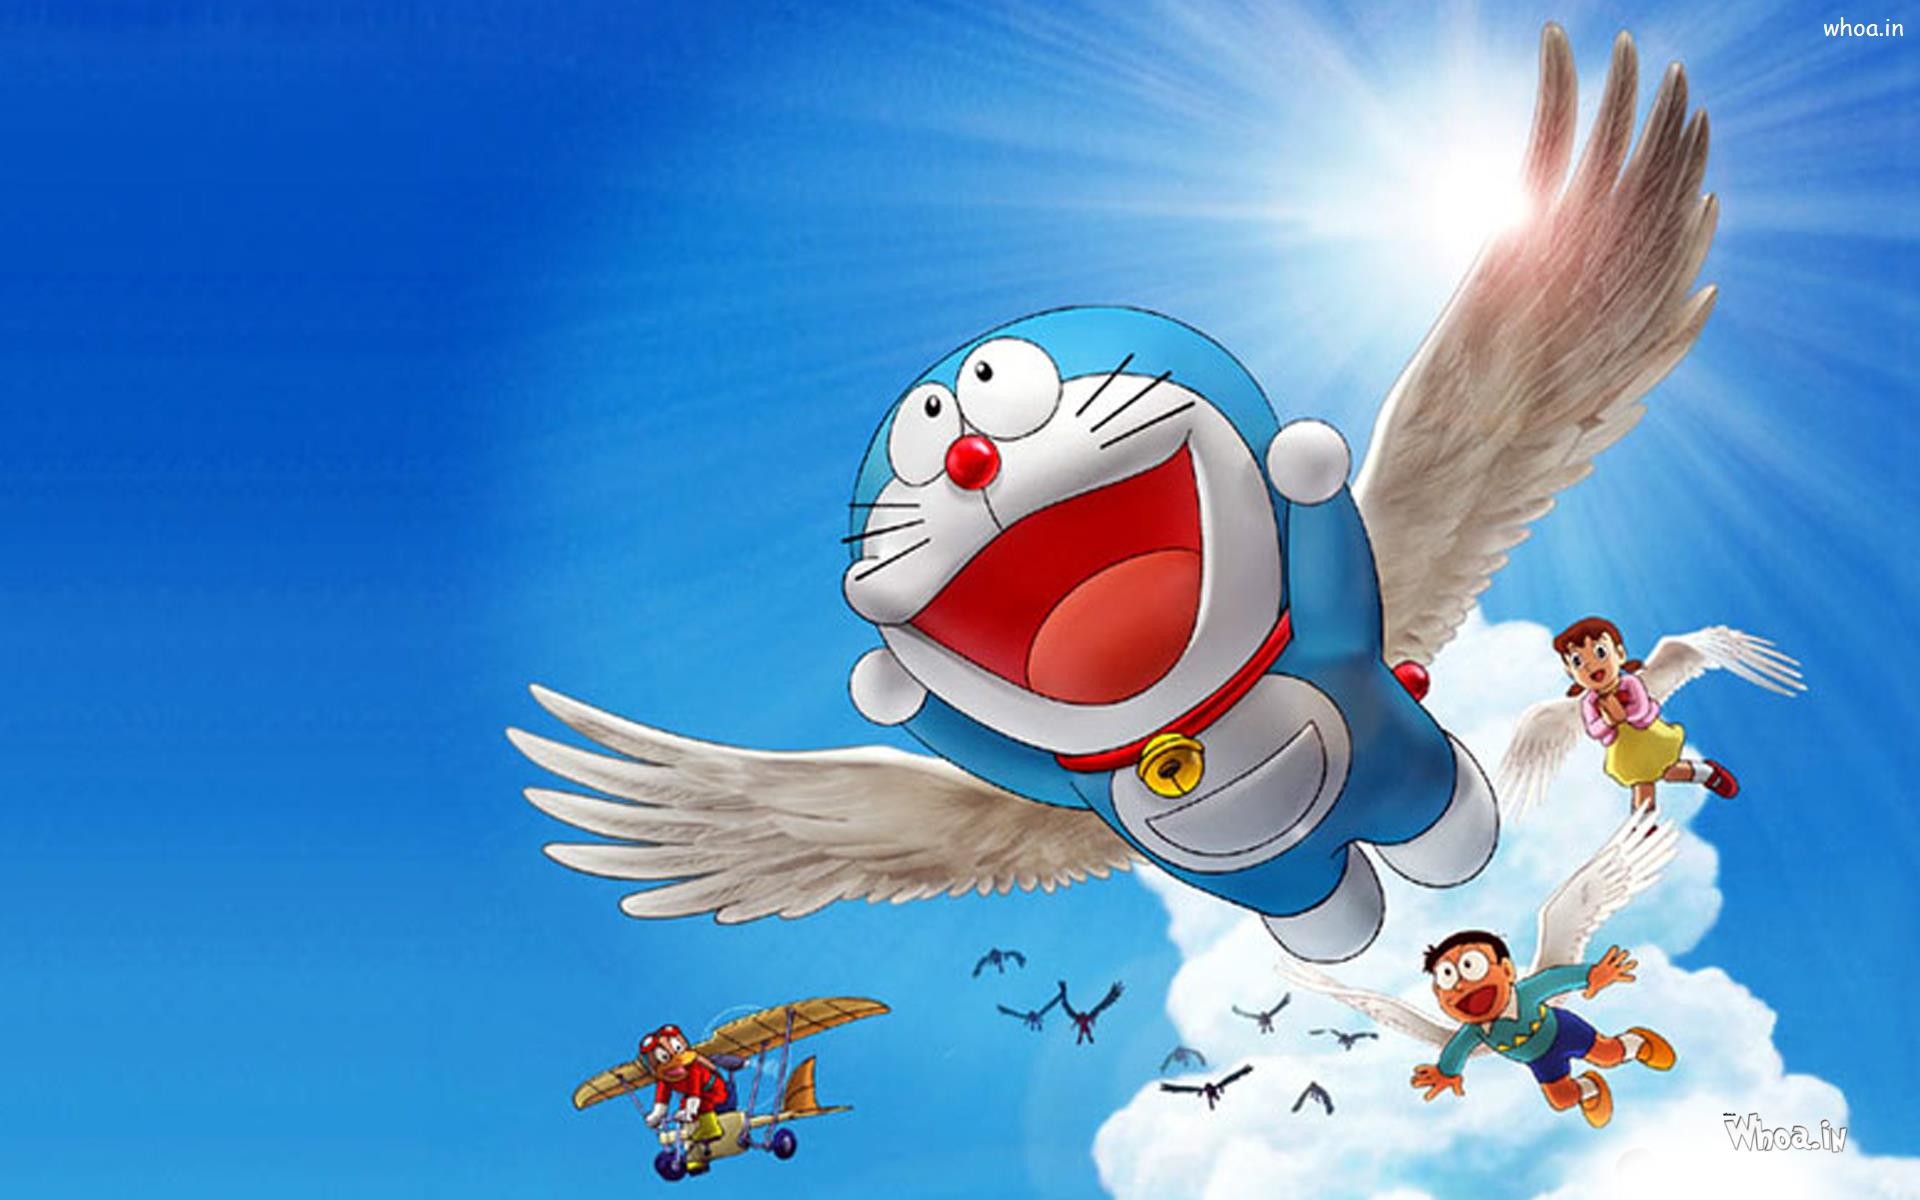 Hãy chiêm ngưỡng những hình nền Doraemon tuyệt đẹp với những hình ảnh ngộ nghĩnh của chú mèo máy từ tương lai. Điều gì tốt hơn khi mỗi lần mở màn hình là được chào đón bởi những hình nền yêu thương này?